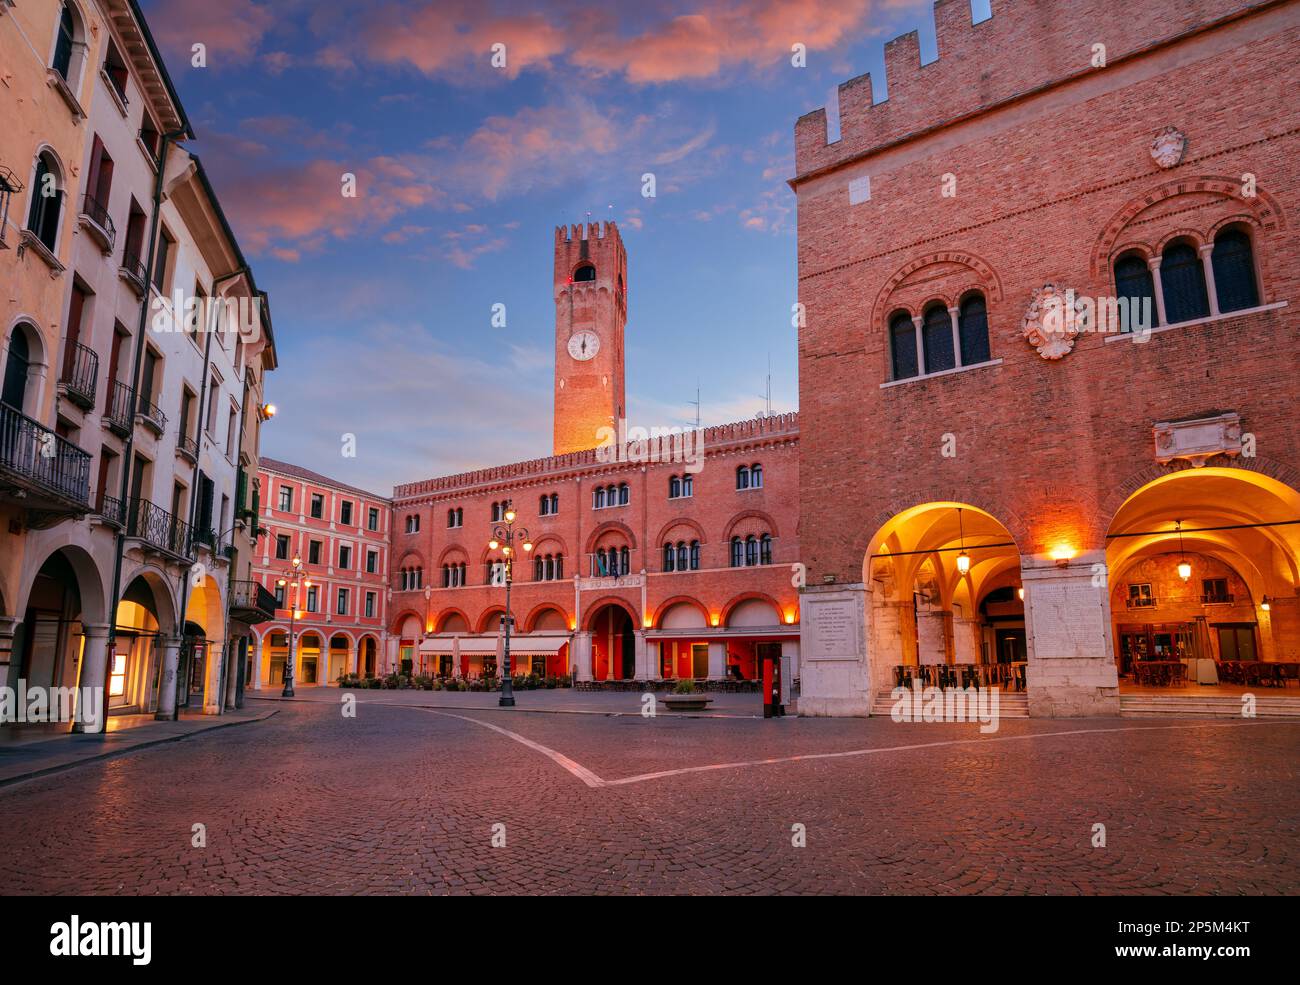 Treviso, Italien. Stadtbild des historischen Zentrums von Treviso, Italien mit altem Platz bei Sonnenaufgang. Stockfoto